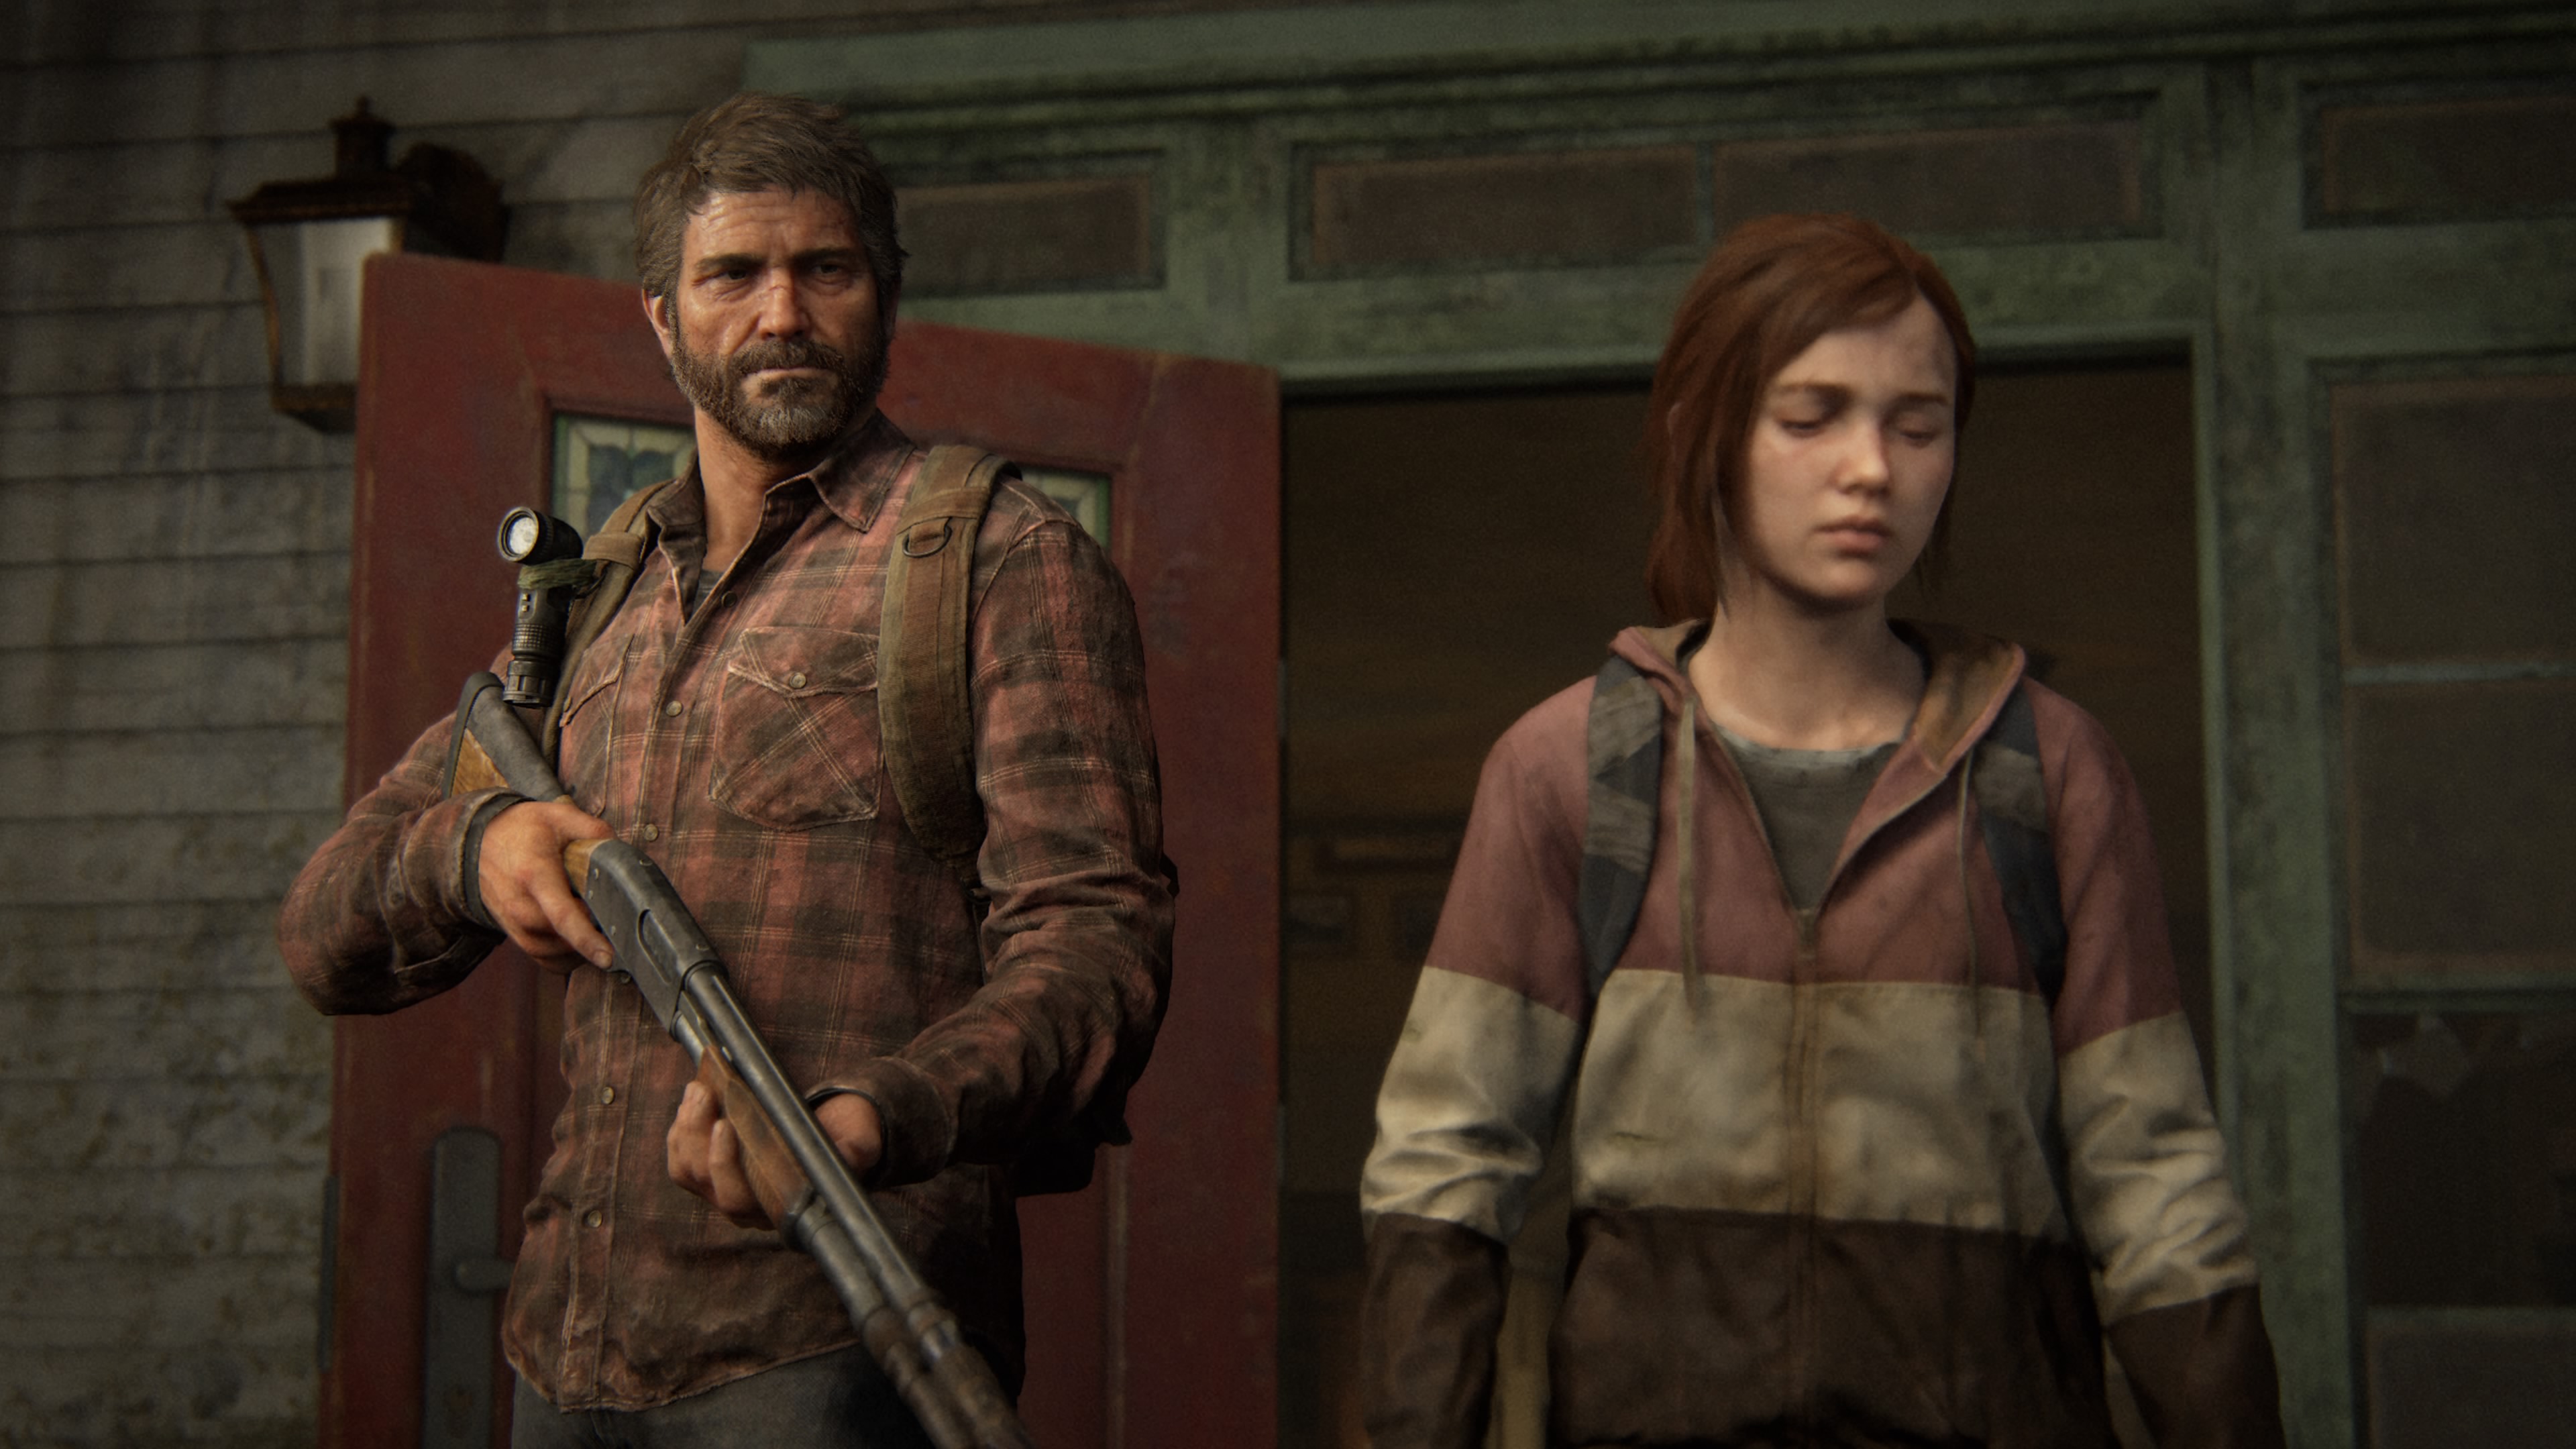 The Last of Us 2 Remastered? Un trabajador de Naughty Dog revela